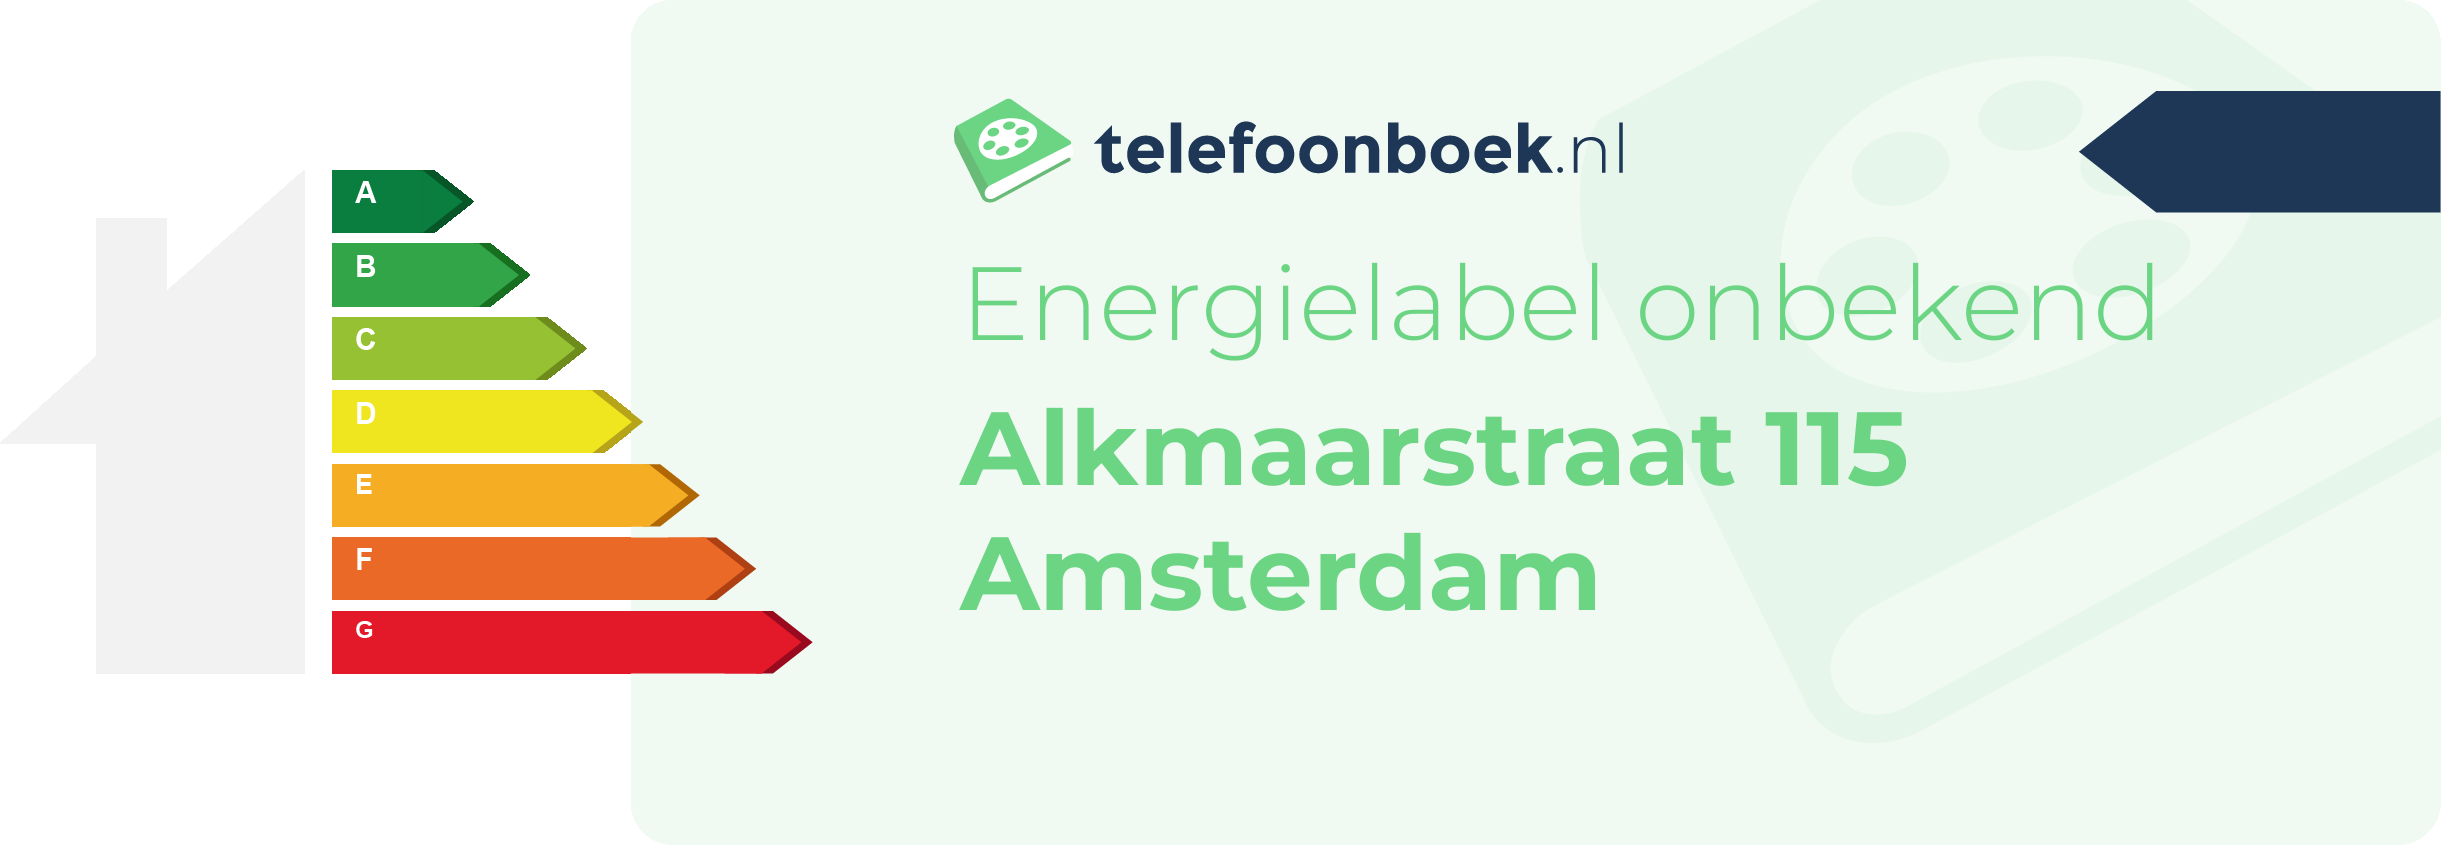 Energielabel Alkmaarstraat 115 Amsterdam